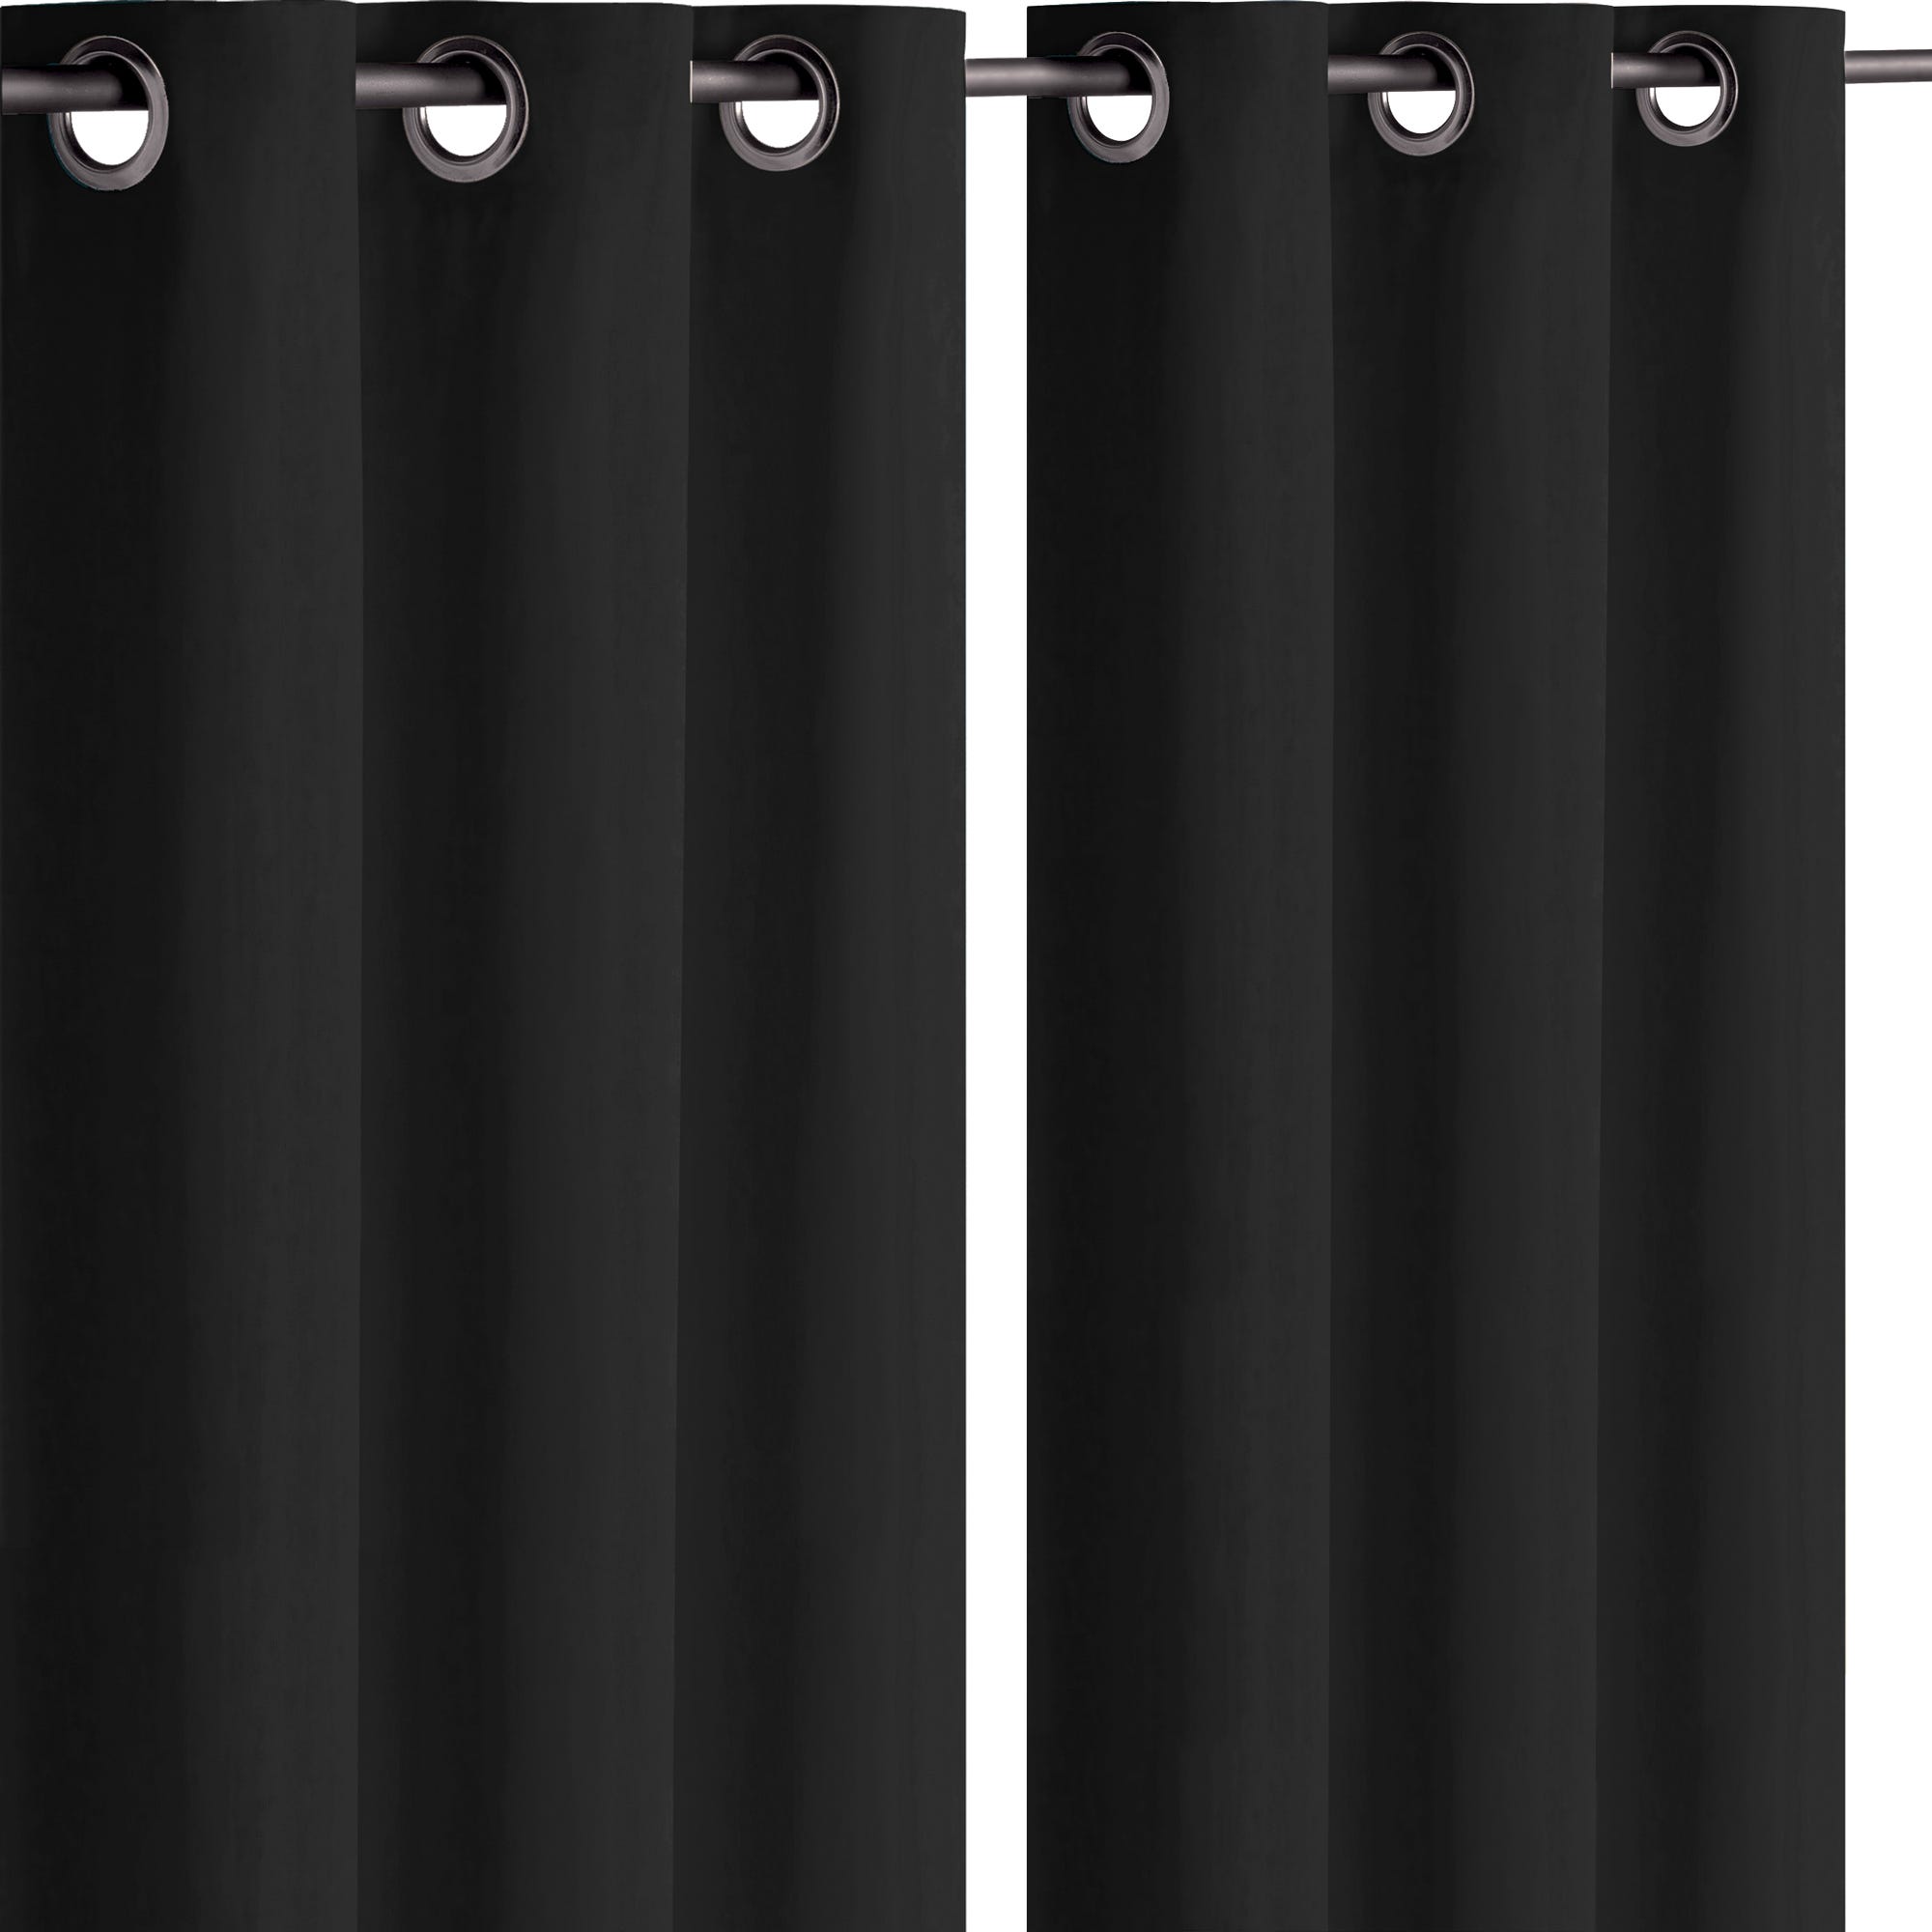 Lot de 2 rideaux occultant thermique noir 140 x 260 cm - Noir